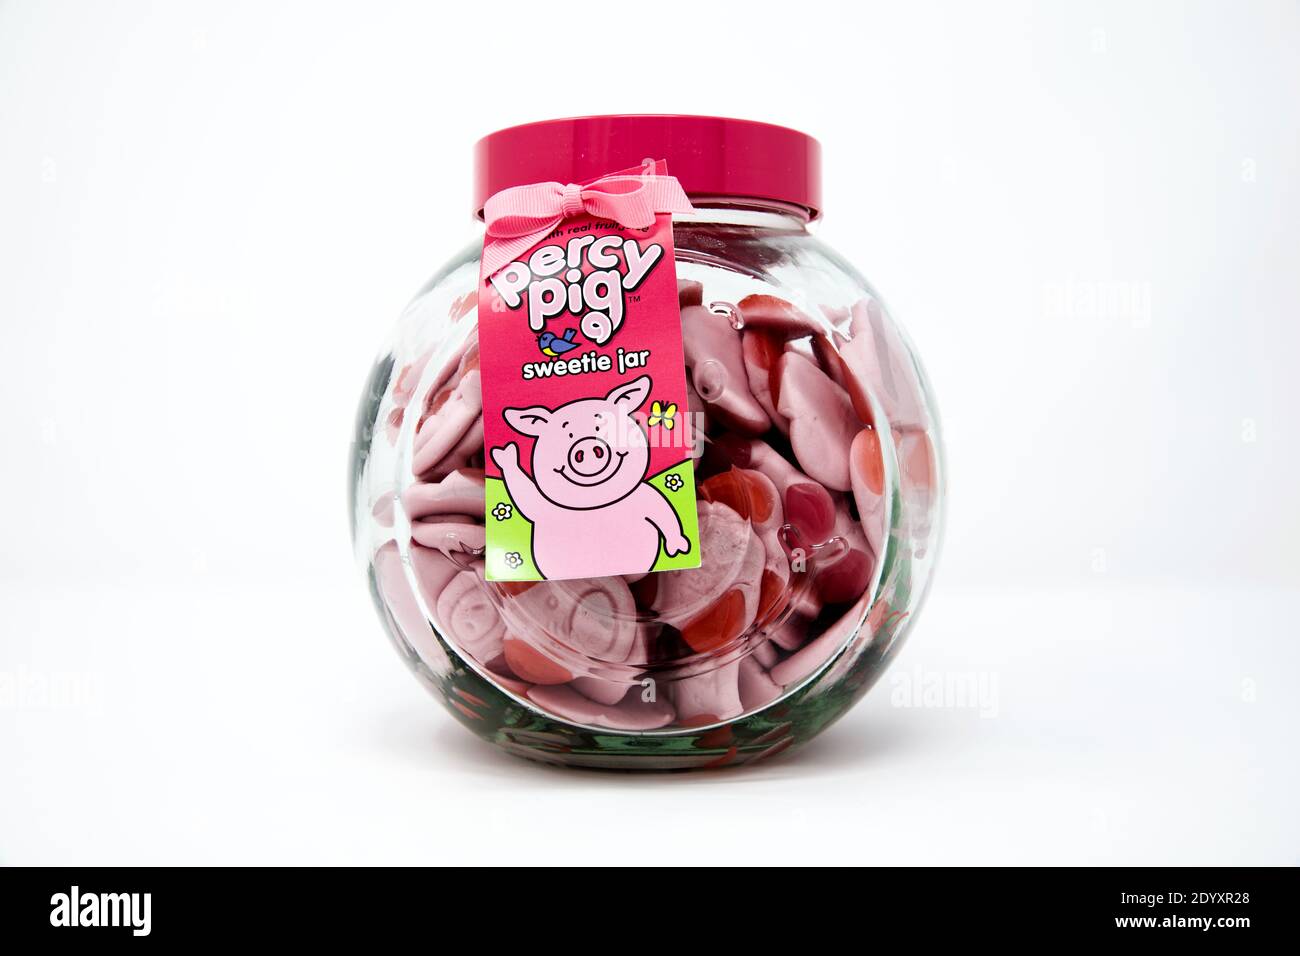 Percy Pig Glass Sweetie Jar Stock Photo